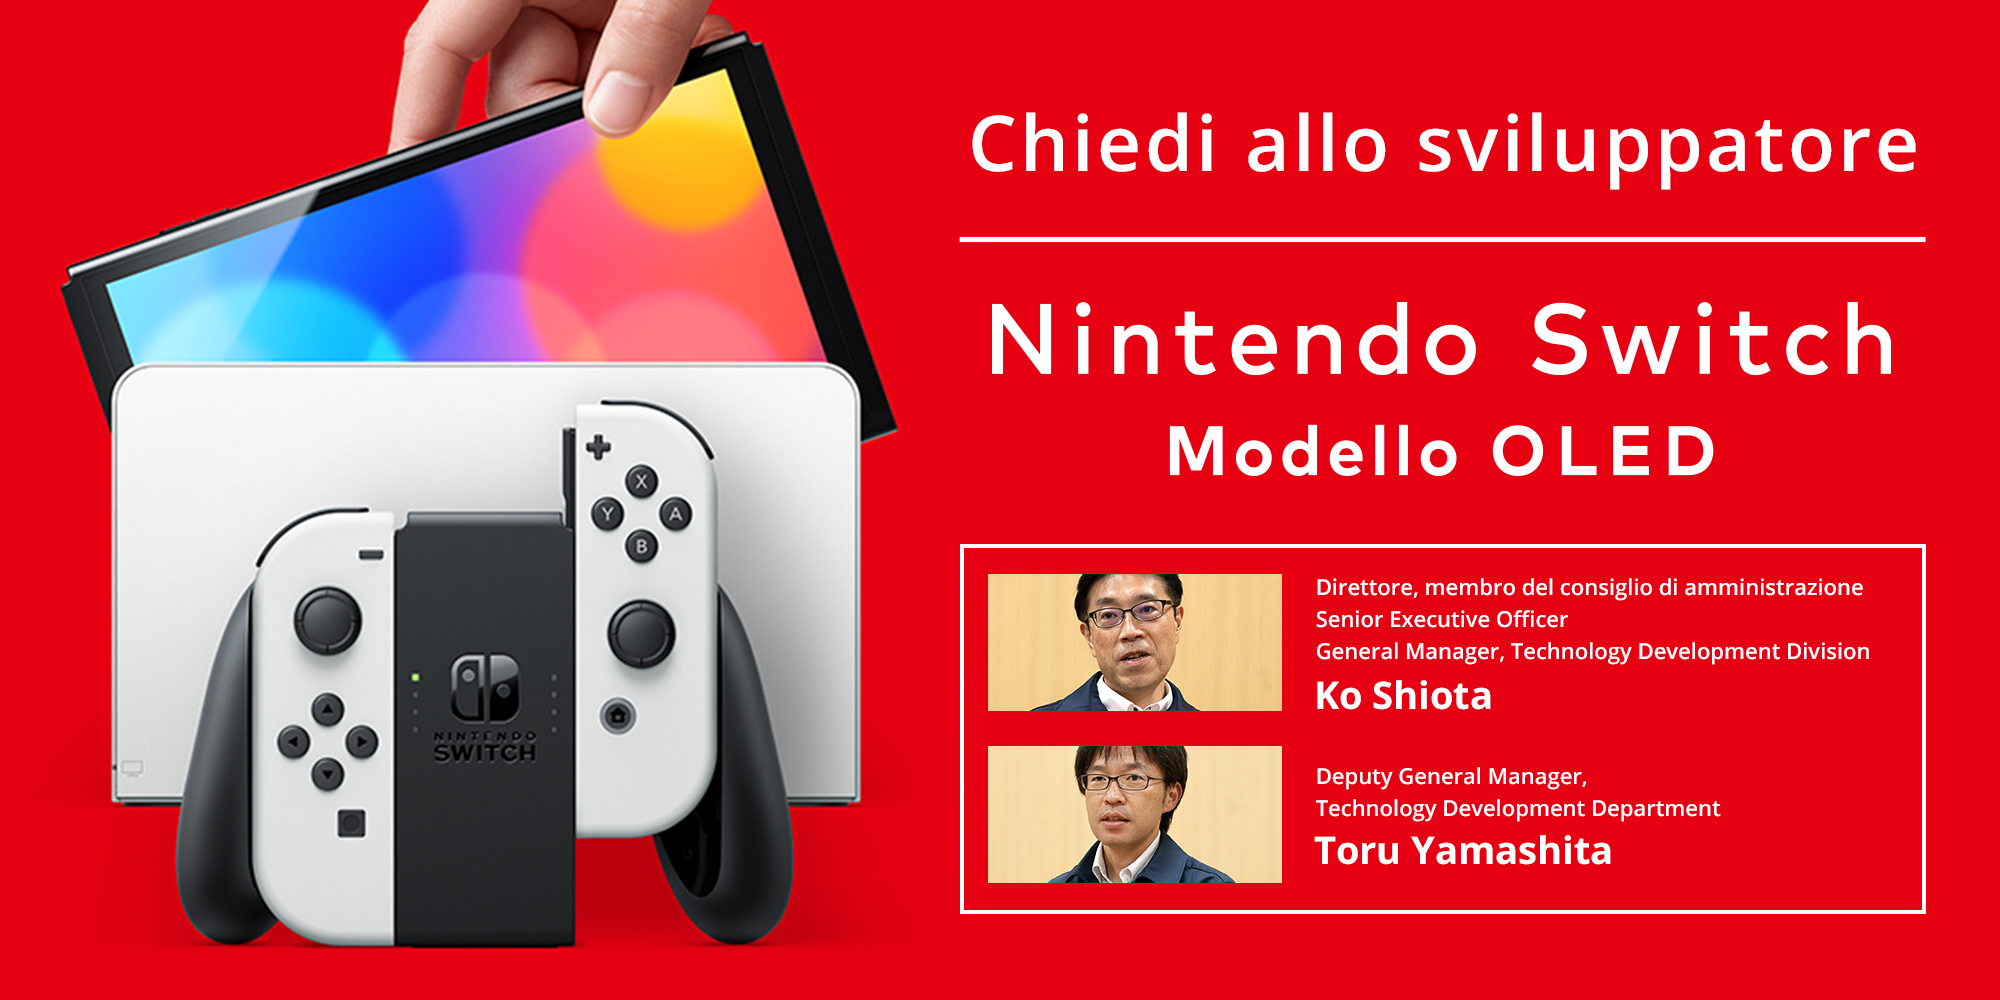 Chiedi allo sviluppatore, parte 2: Nintendo Switch – Modello OLED